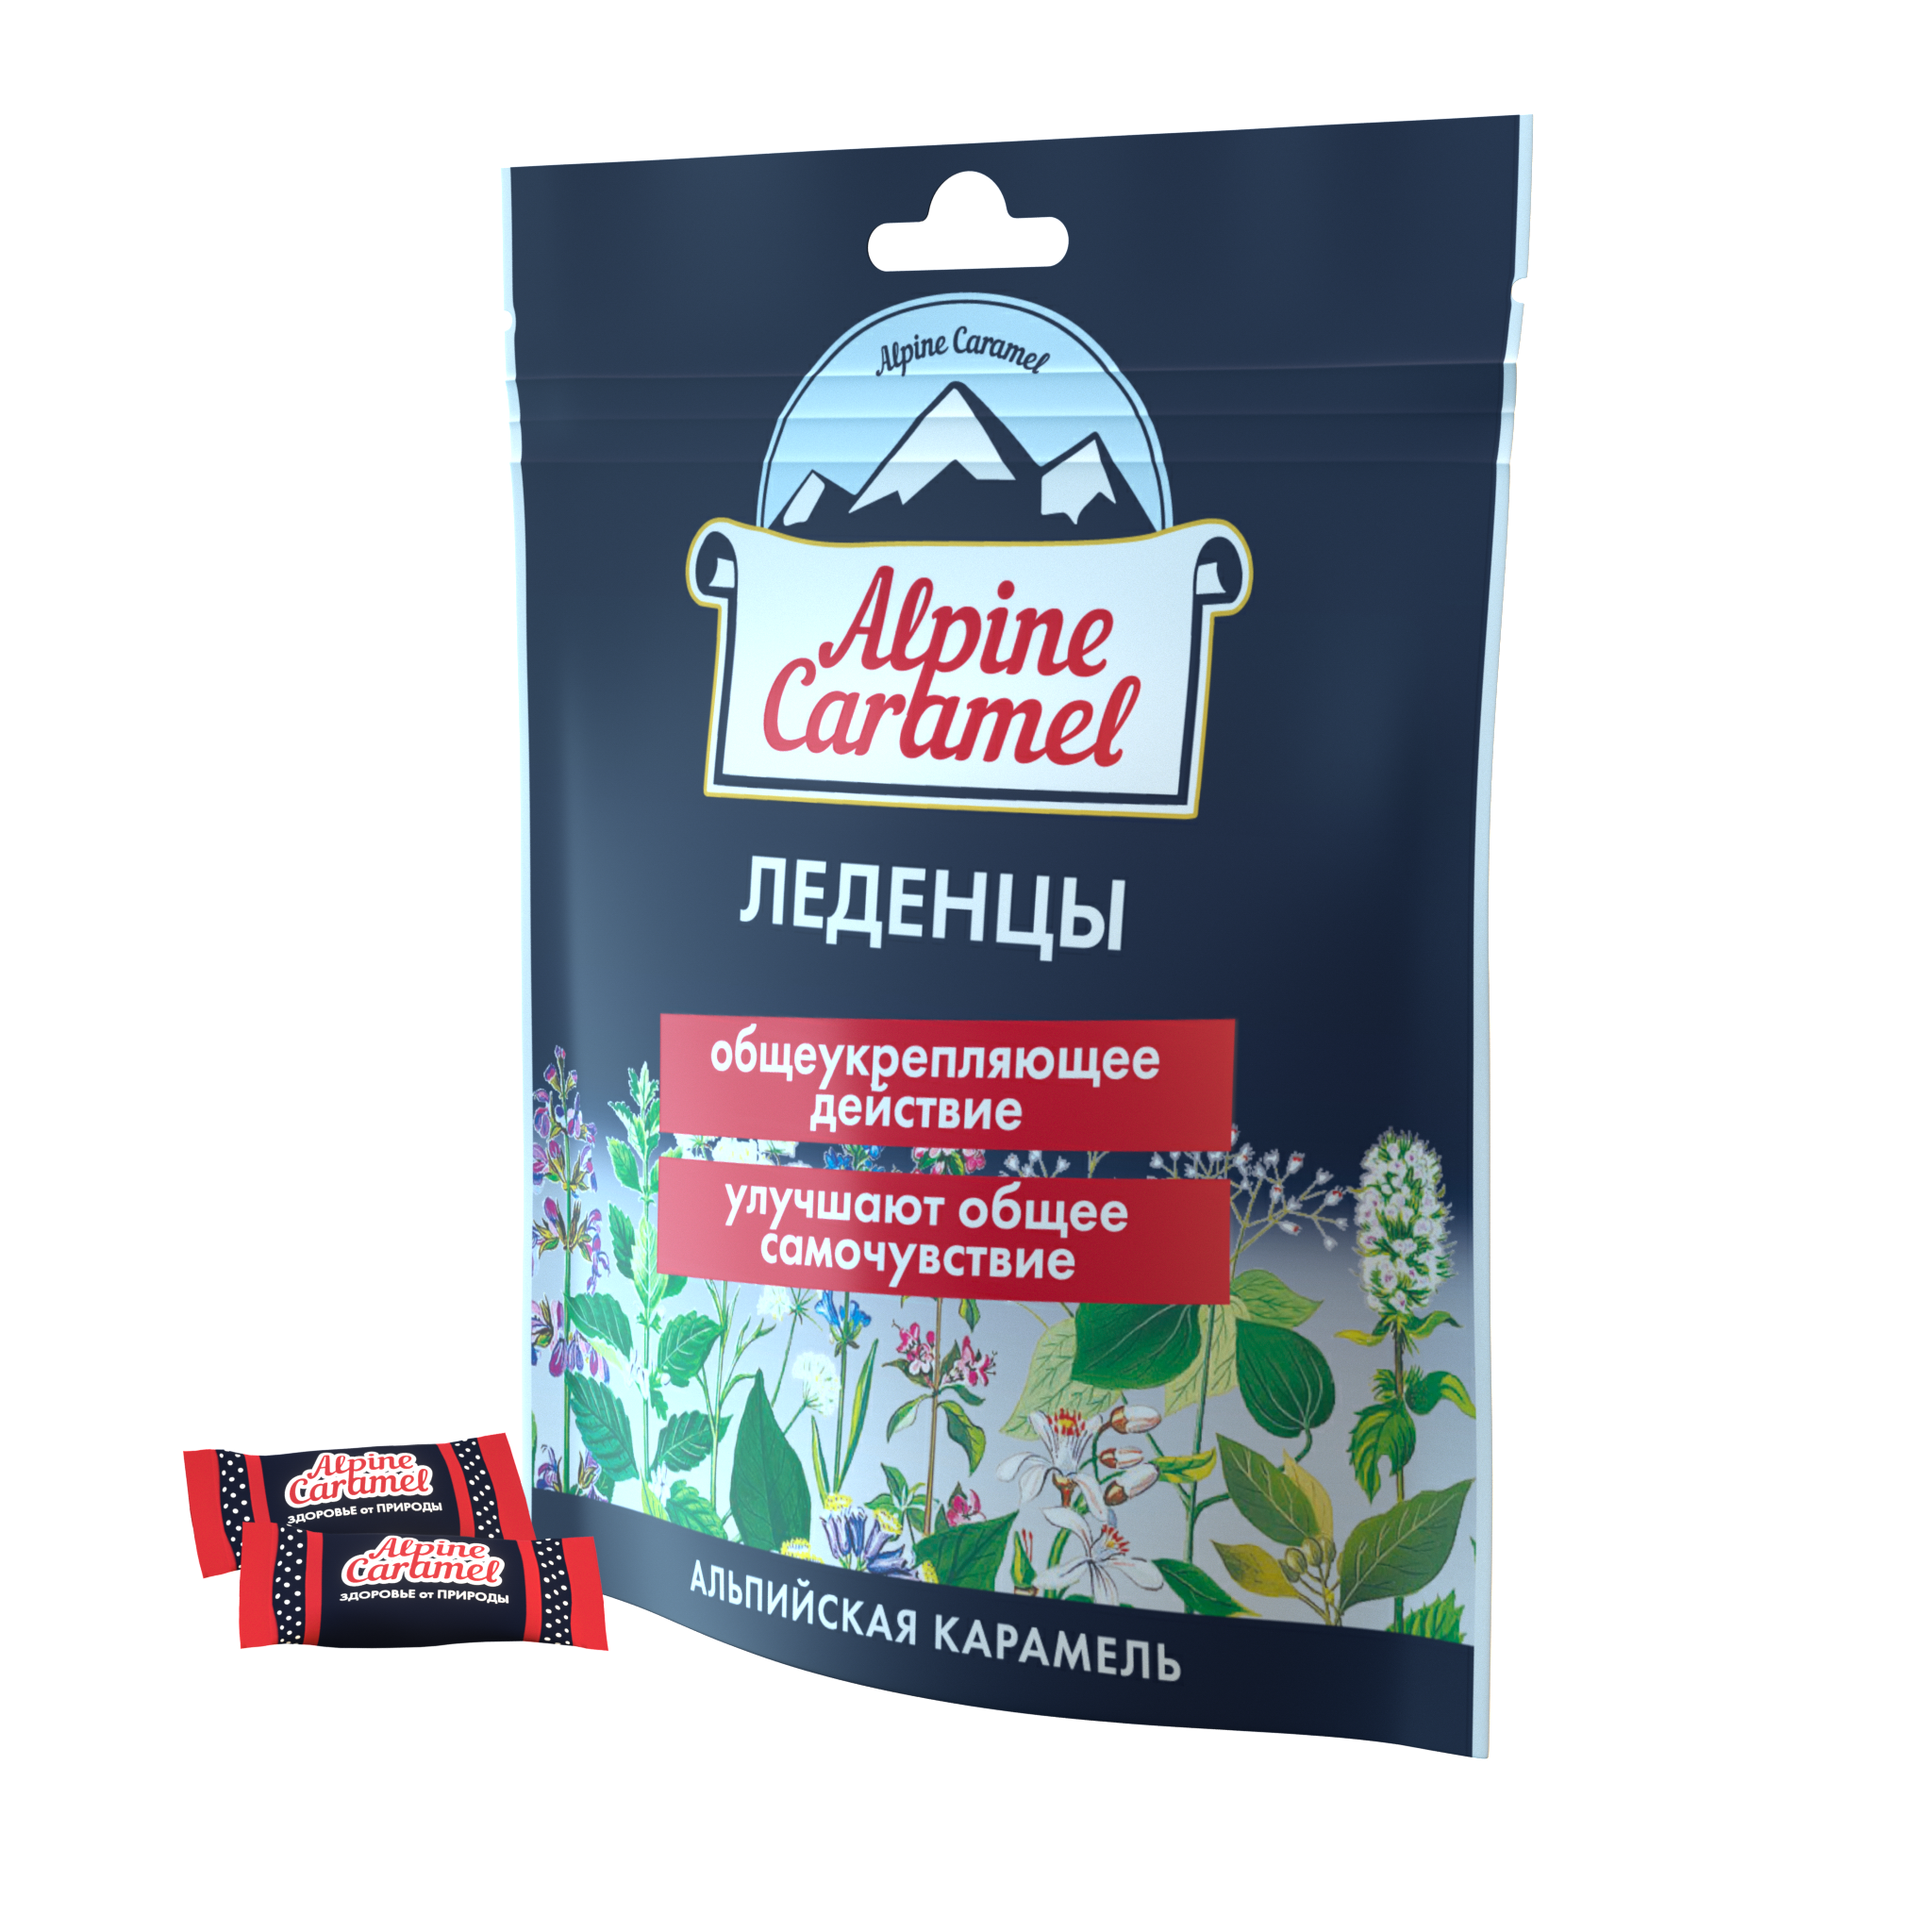 Alpine Caramel Альпийская Карамель леденцы, 75 г альпийская карамель леденцы без сахара уп 75 г 1 шт